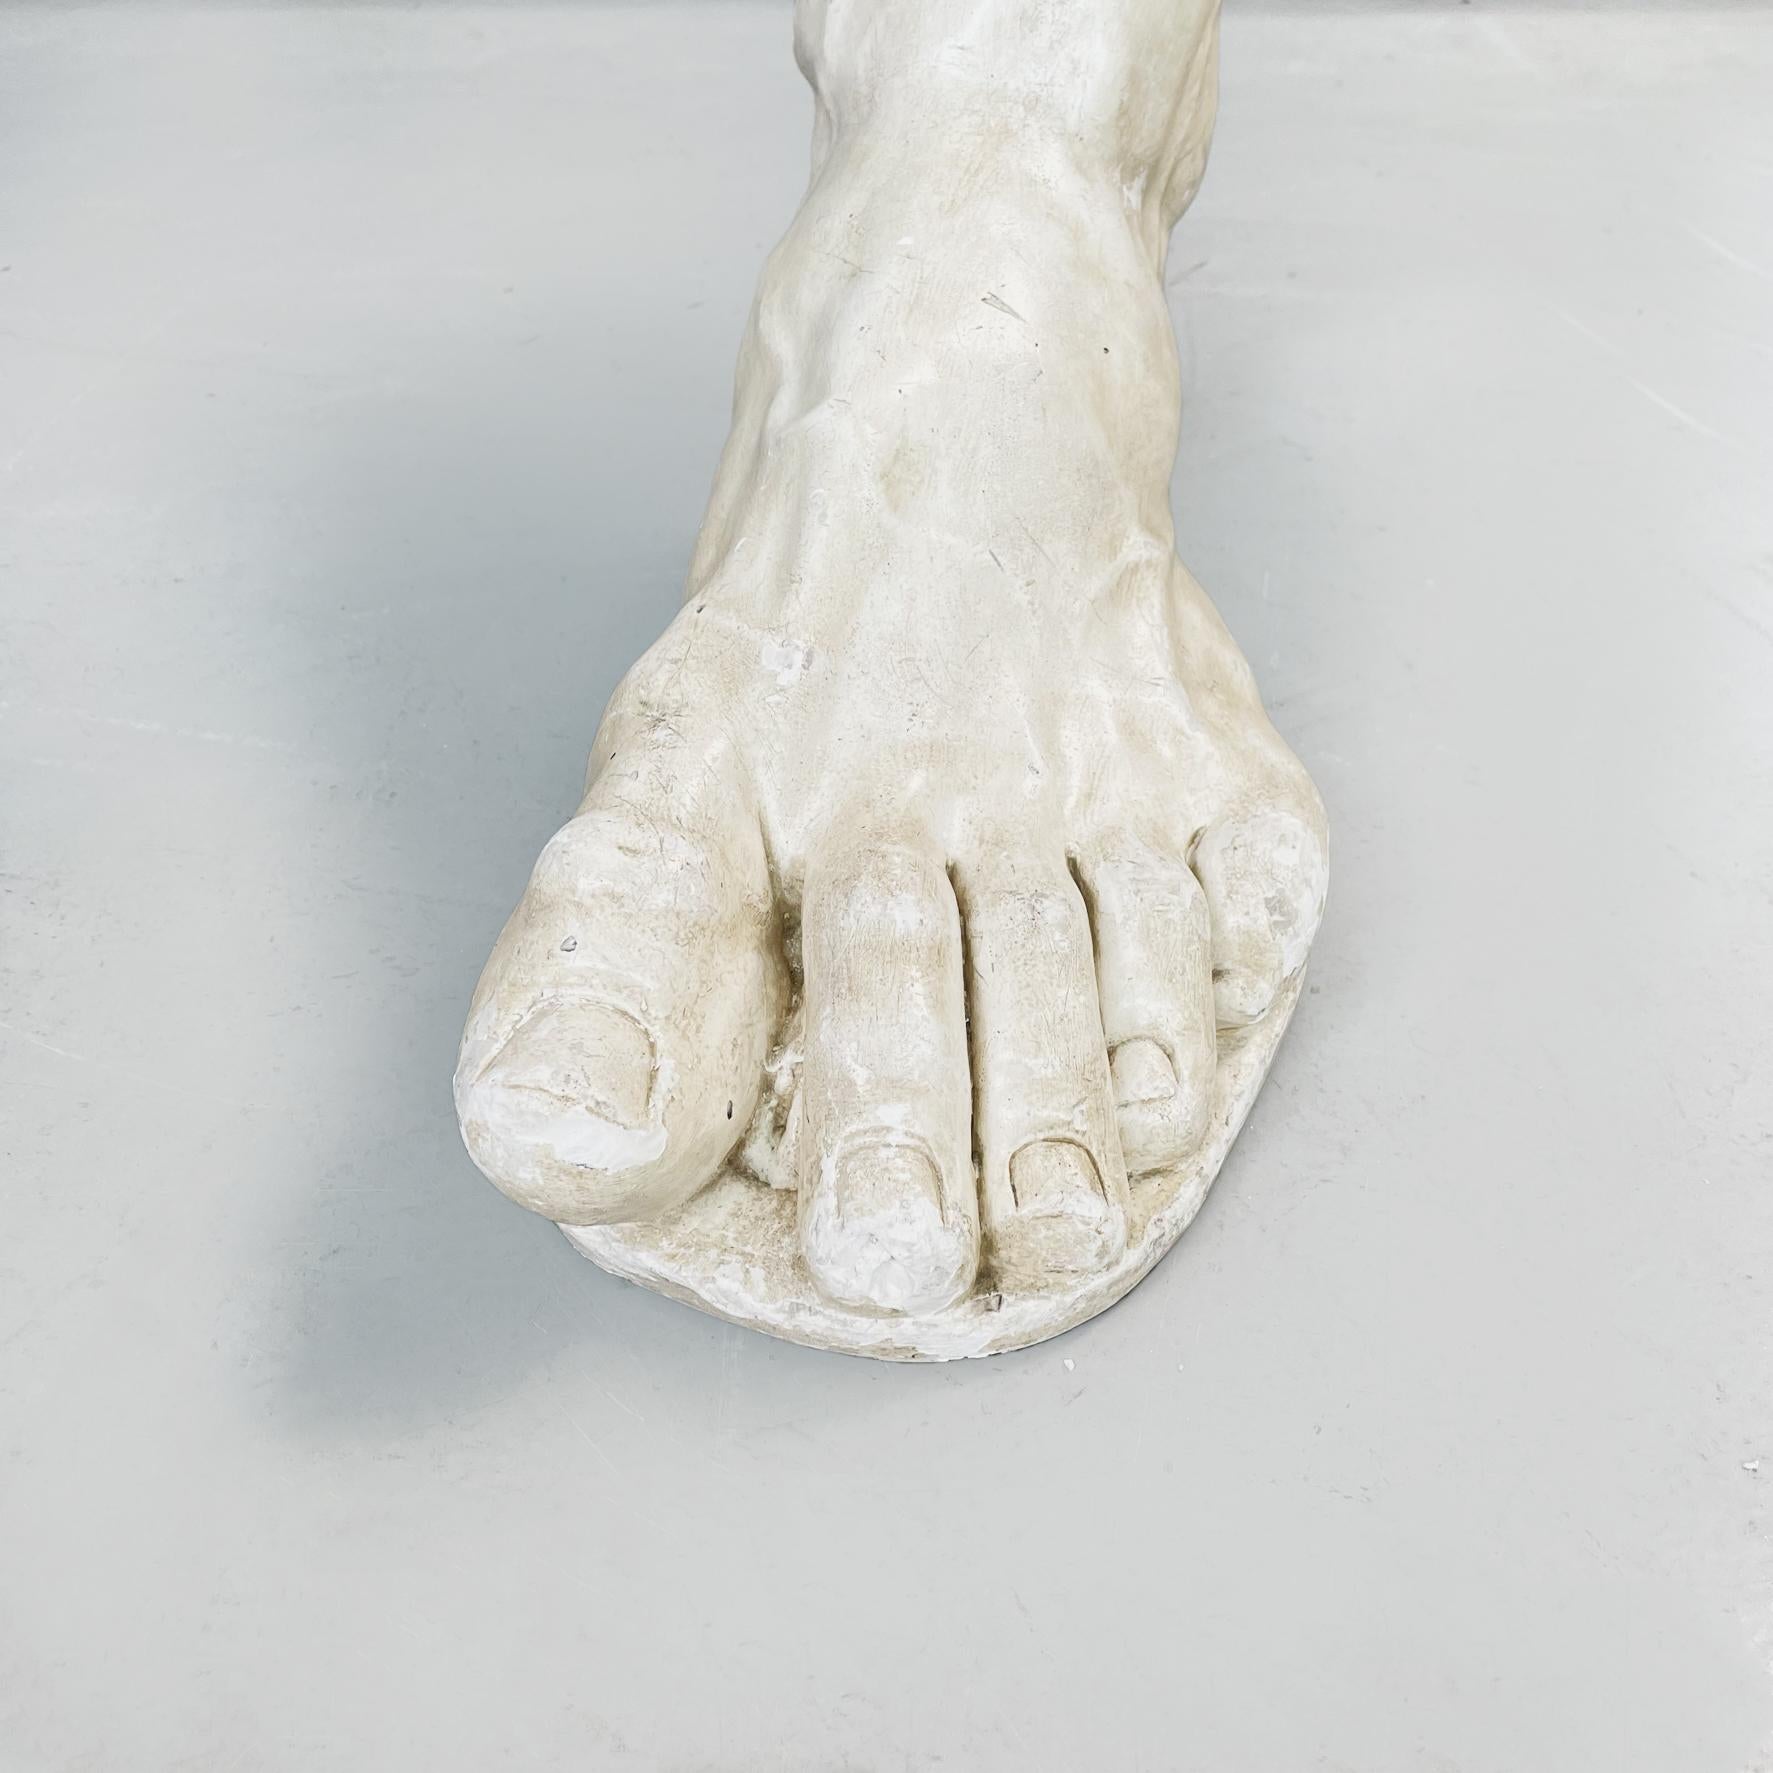 Italian Modern Foot Statue in Light Beige Plaster, 1970s For Sale 3